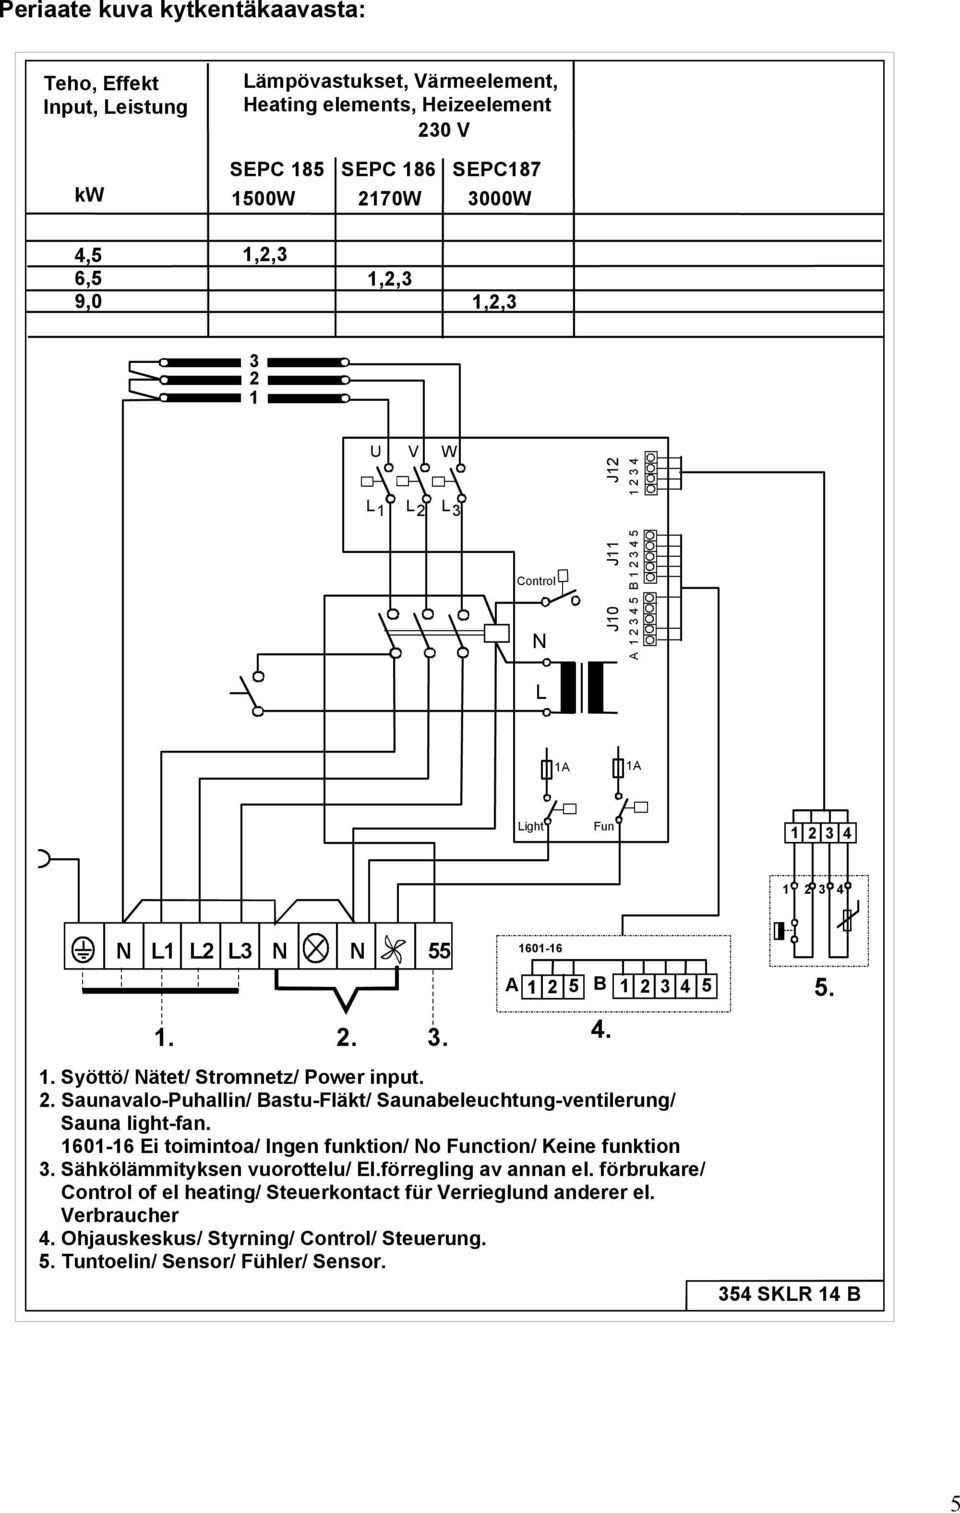 Syöttö/ Nätet/ Stromnetz/ Power input. 2. Saunavalo-Puhallin/ Bastu-Fläkt/ Saunabeleuchtung-ventilerung/ Sauna light-fan. 11-16 Ei toimintoa/ Ingen funktion/ No Function/ Keine funktion 3.